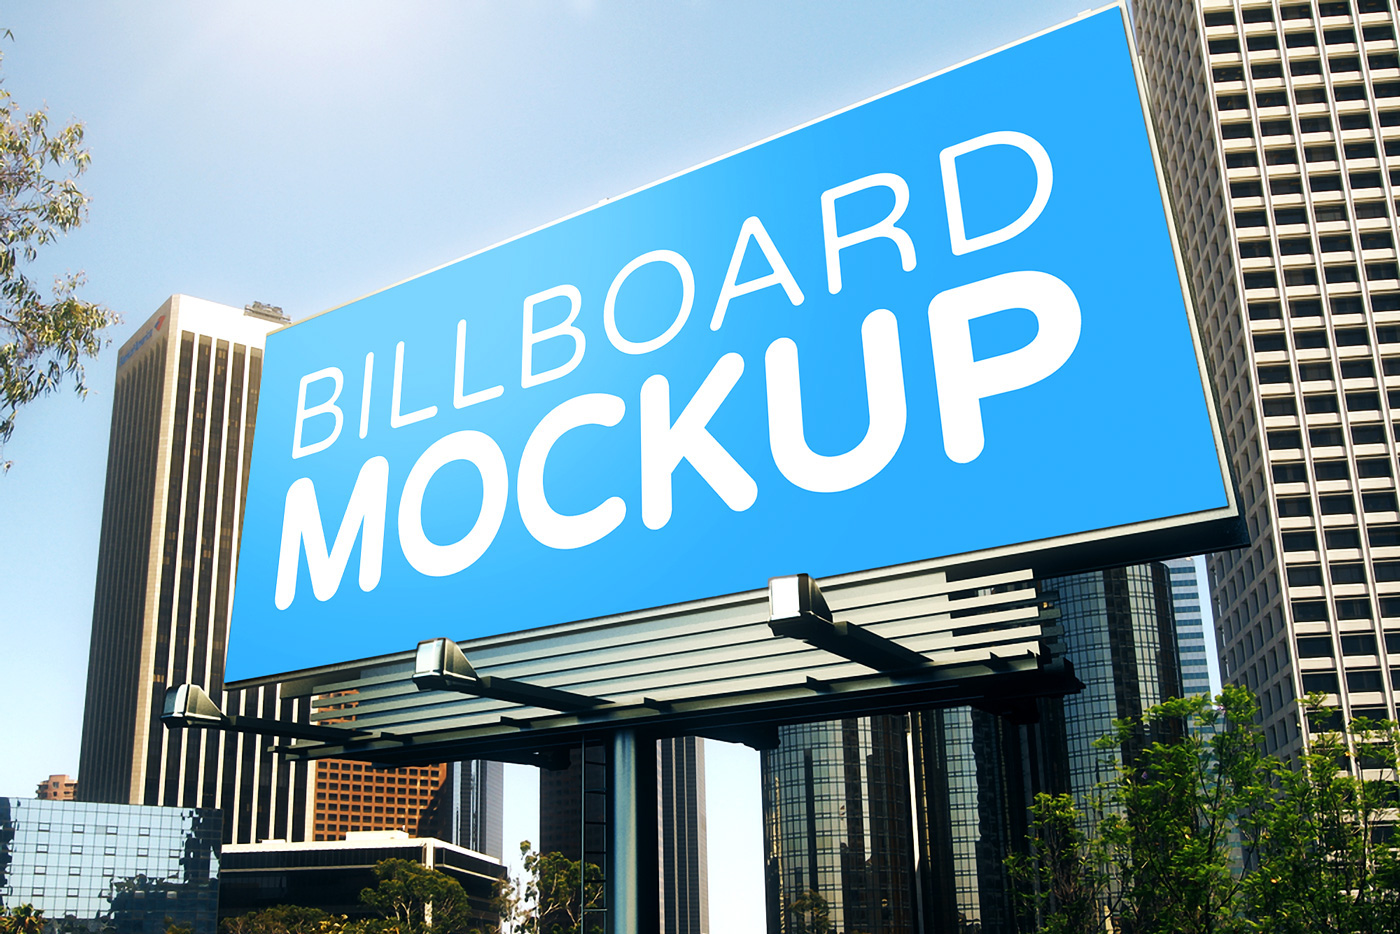 illboard Billboards bundle set big mock-up ad Advertising  road banner